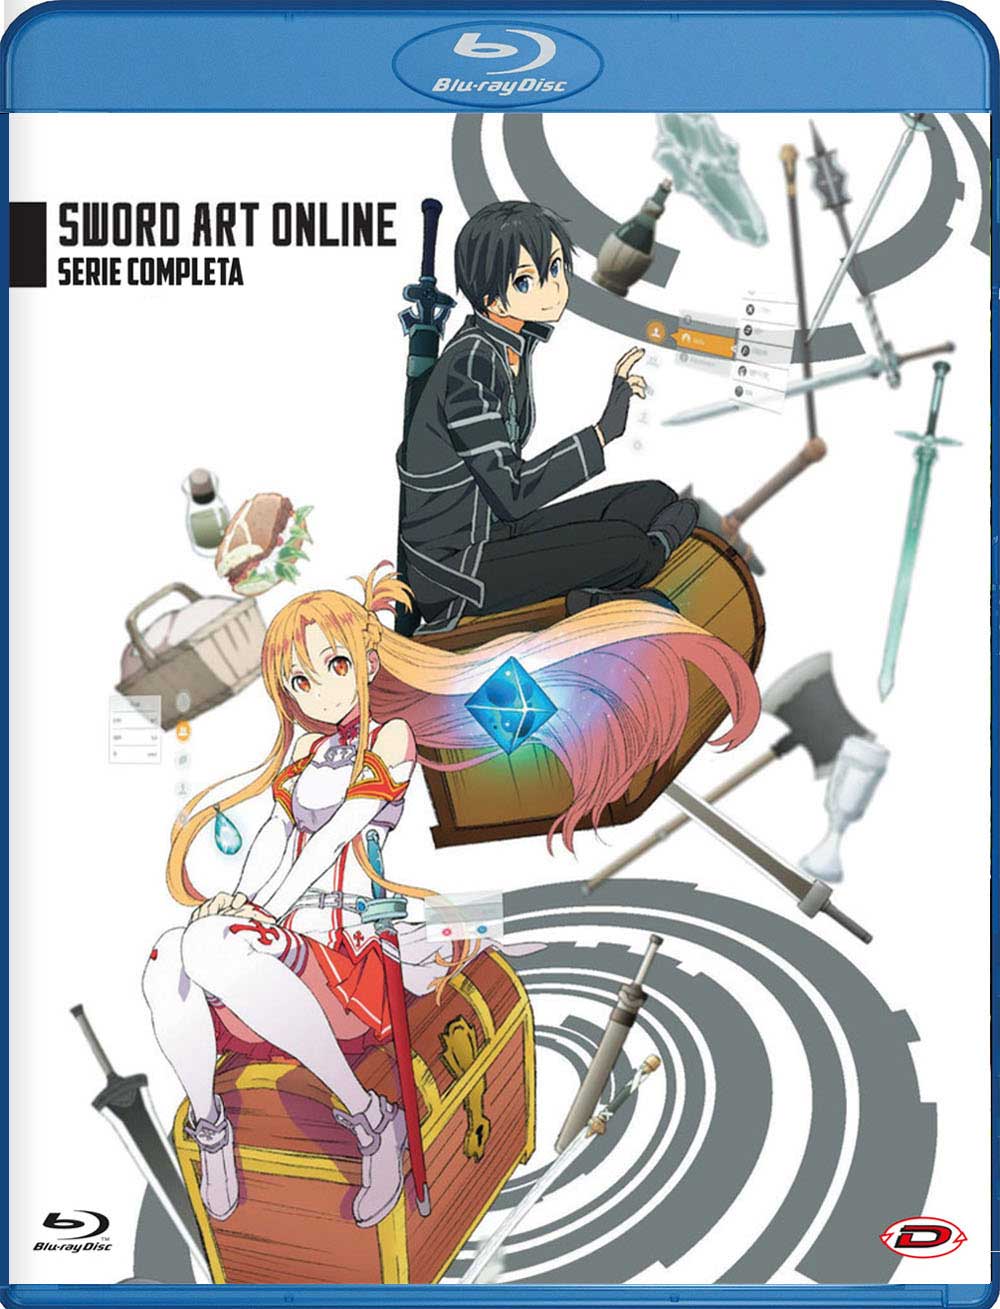 Sword Art Online - The Complete Series Eps 01-25 5 NUOVO SIGILLATO EDIZIONE DEL SUBITO DISPONIBILE blu-ray